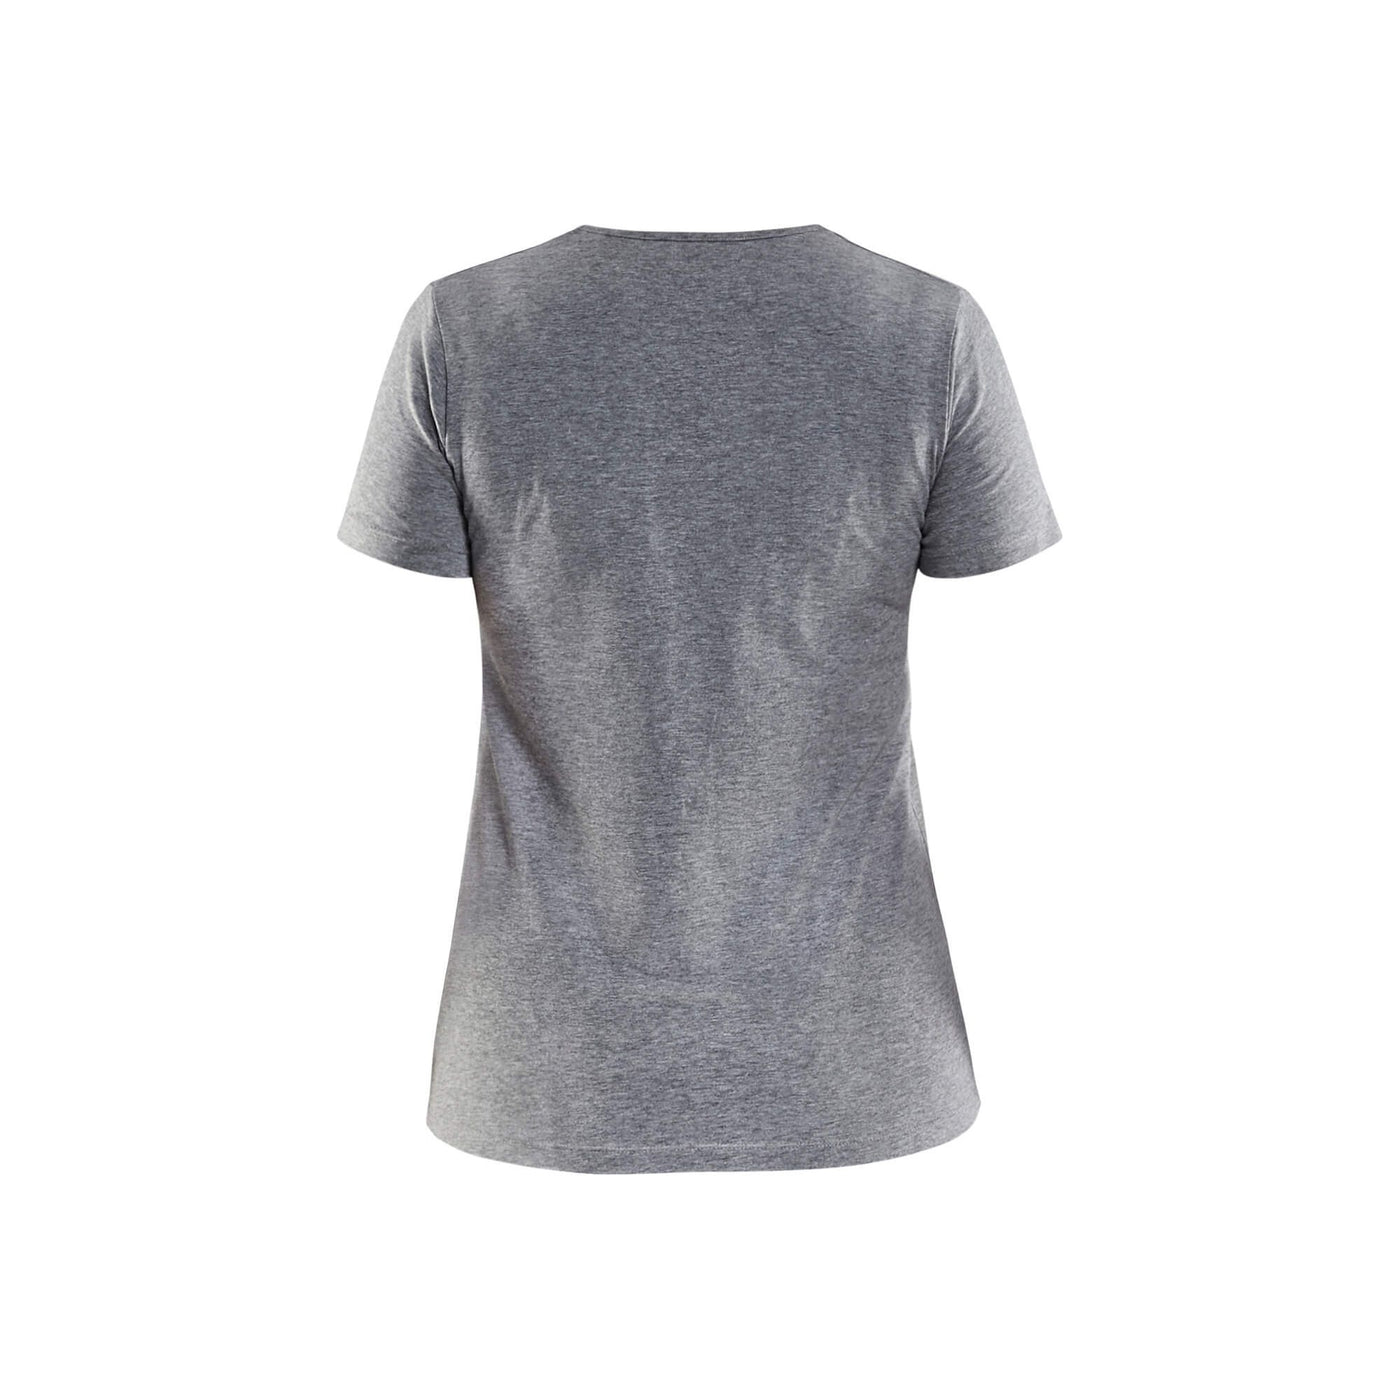 Blaklader 33041059 Grey Work T-Shirt Grey Melange Rear #colour_grey-melange